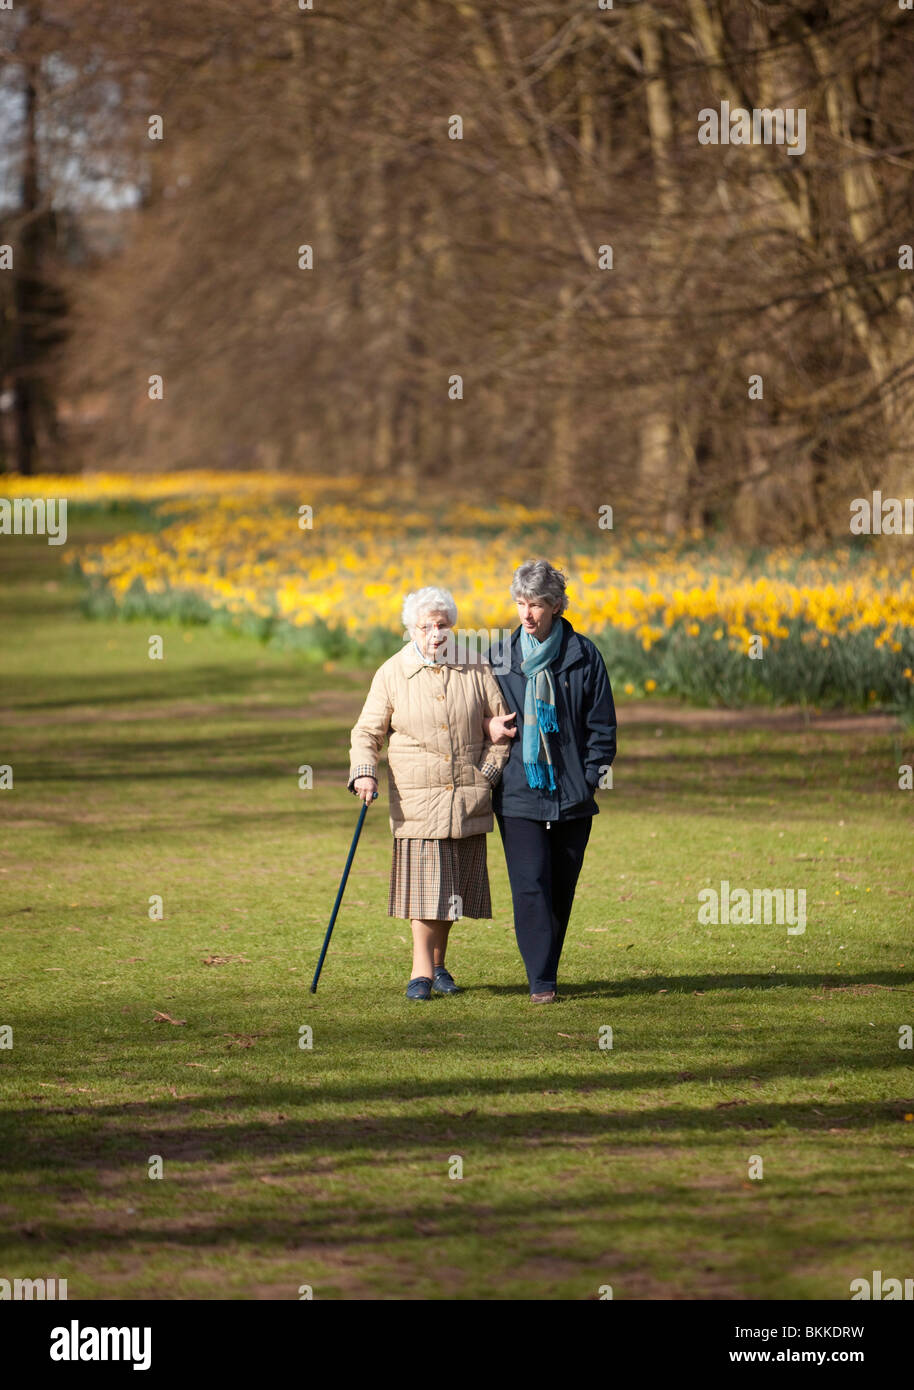 two women walking in a public park Stock Photo